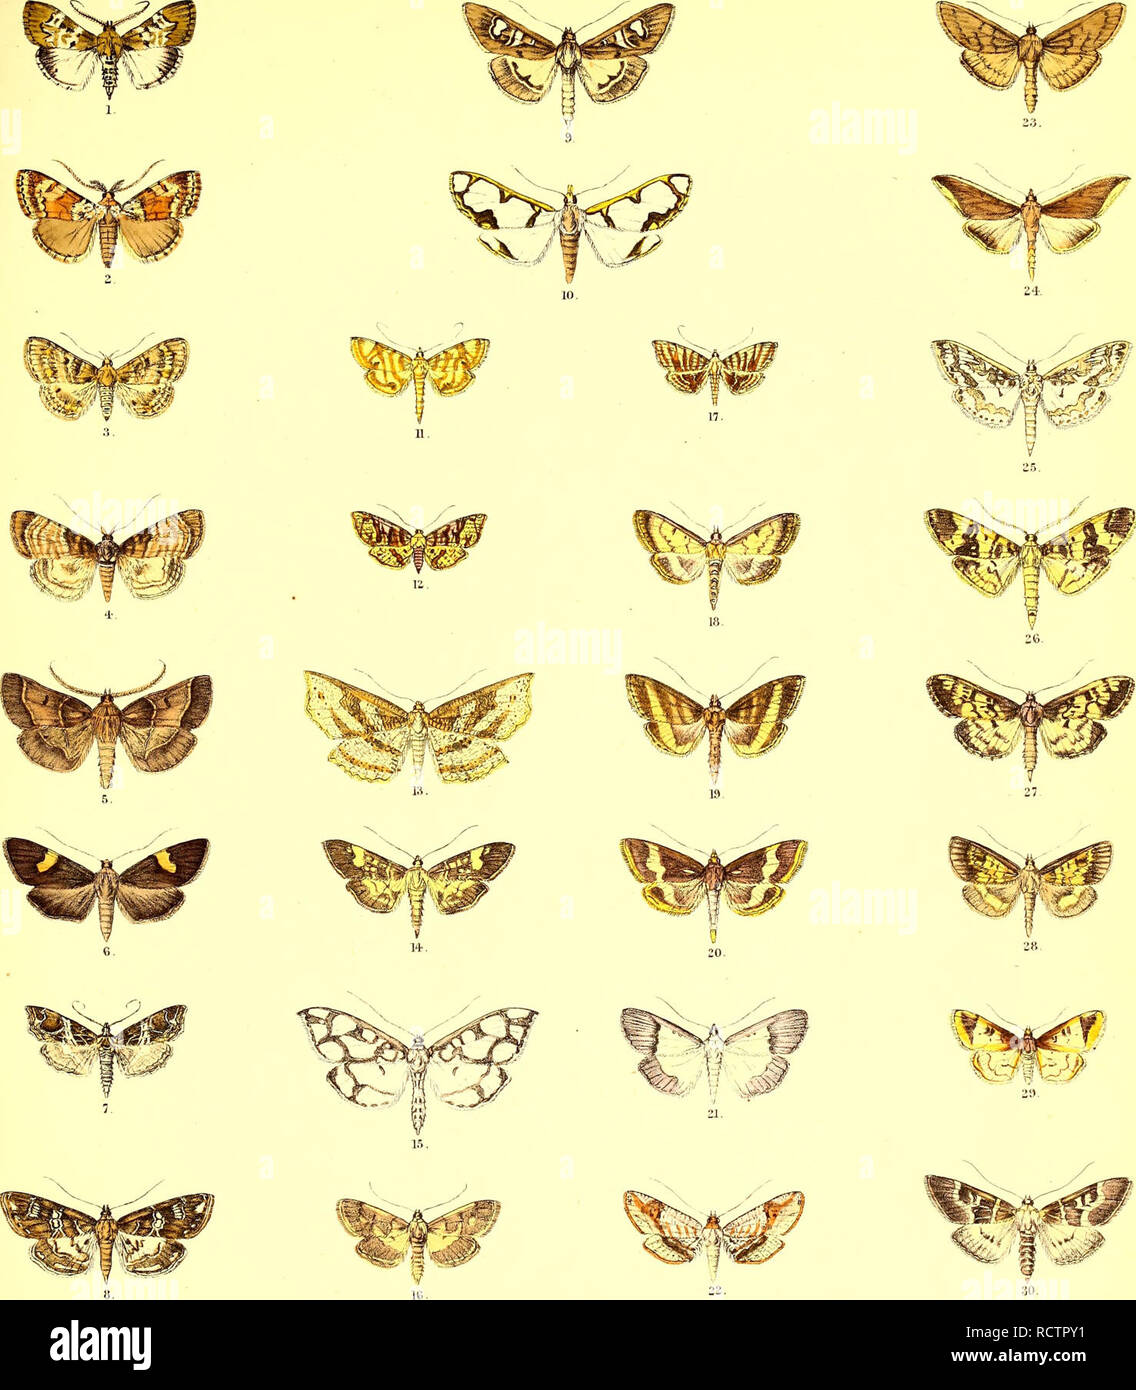 . Beschreibungen der neuen indischen lepidopterous Insekten aus der Sammlung des verstorbenen Mr. W.S. Atkinson. Lepidoptera - Indien; Lepidoptera. Asiatic Society. Bengalen. Lepidoptera. Platte VH.. F, C MooT-e. del etiCh.. liinerrL Broa Trap. Ich, Locastpa lativitta, (?. 2, Paramclia basalis. 3, Scopocera smuosa,?. 4, S varie. Gata, ¥. • 5, Pyi "alis Assamica. y, 6 Patania seiravialis. 7, Cymoriza mextricata, c? . 8, C nvularis. 9 Chilka Glyphodes,; ?. 10, CirrocPirista Bryozalis,?, II, Haritala pecurrens. d". 12, Microsca lobulata, 13, Camadena vespertilionis. 14, Samea qumquigei - ein. 15, Polytlilipt. Ein Pera Stockfoto